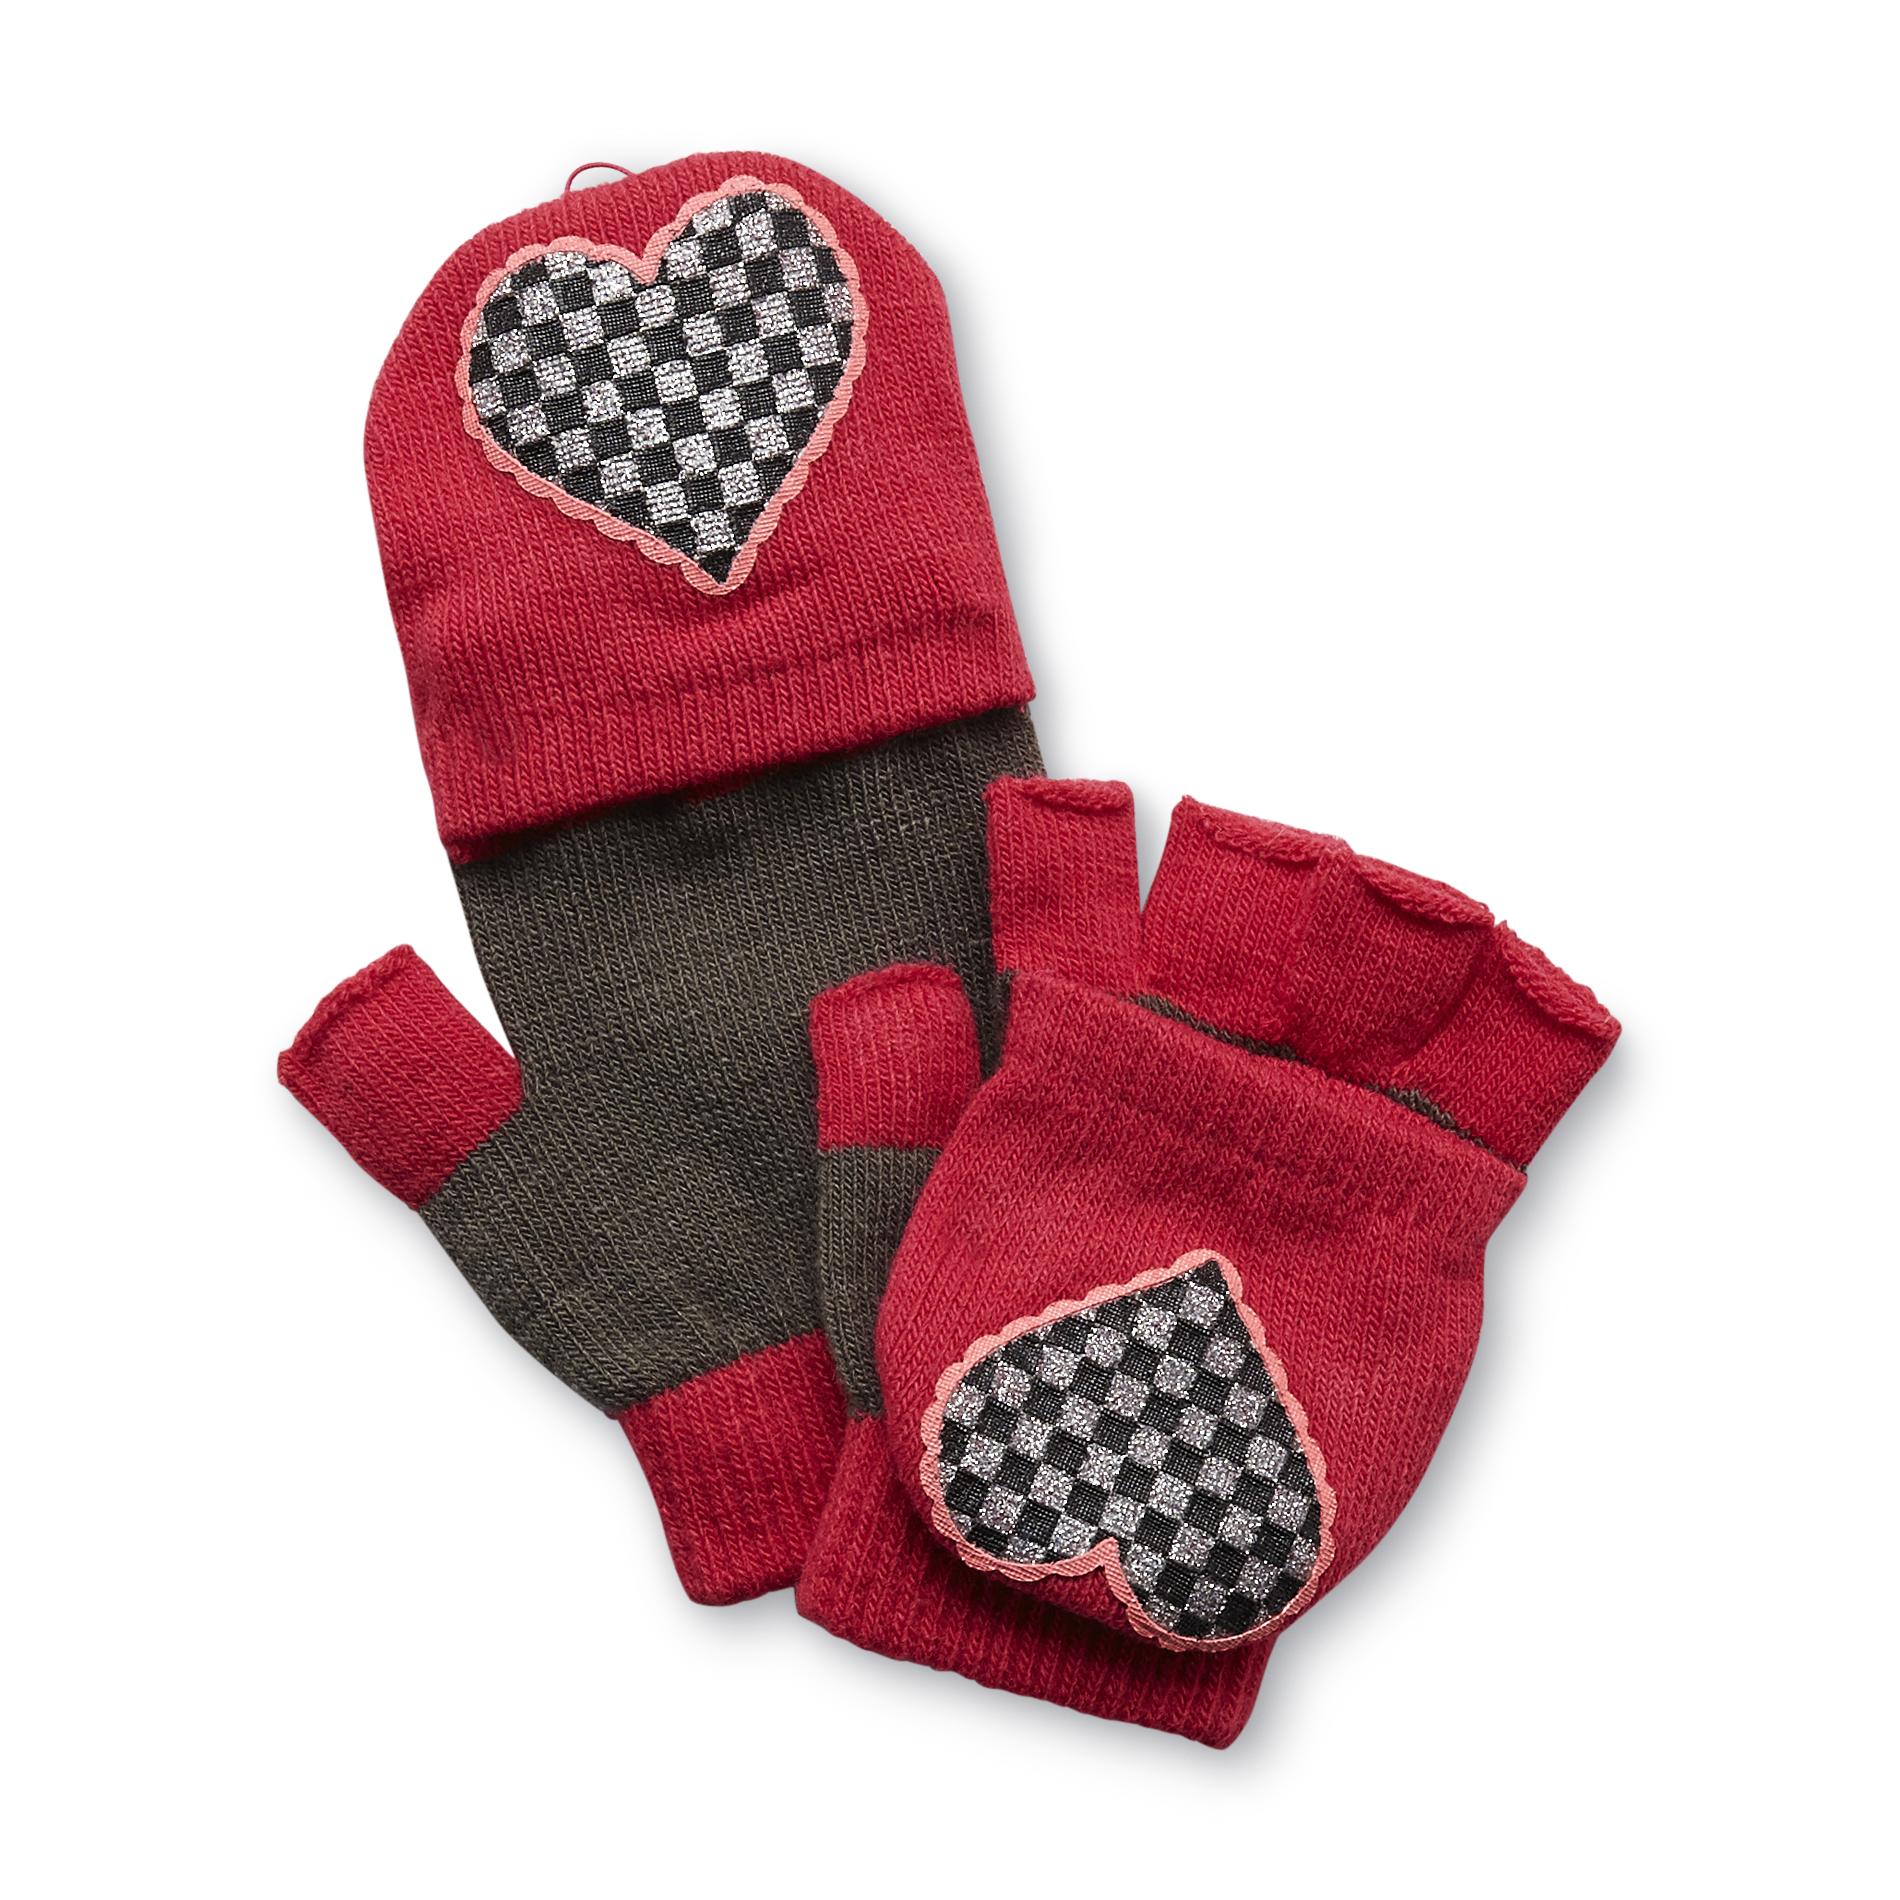 Joe Boxer Girl's Flip-Top Fingerless Gloves - Heart